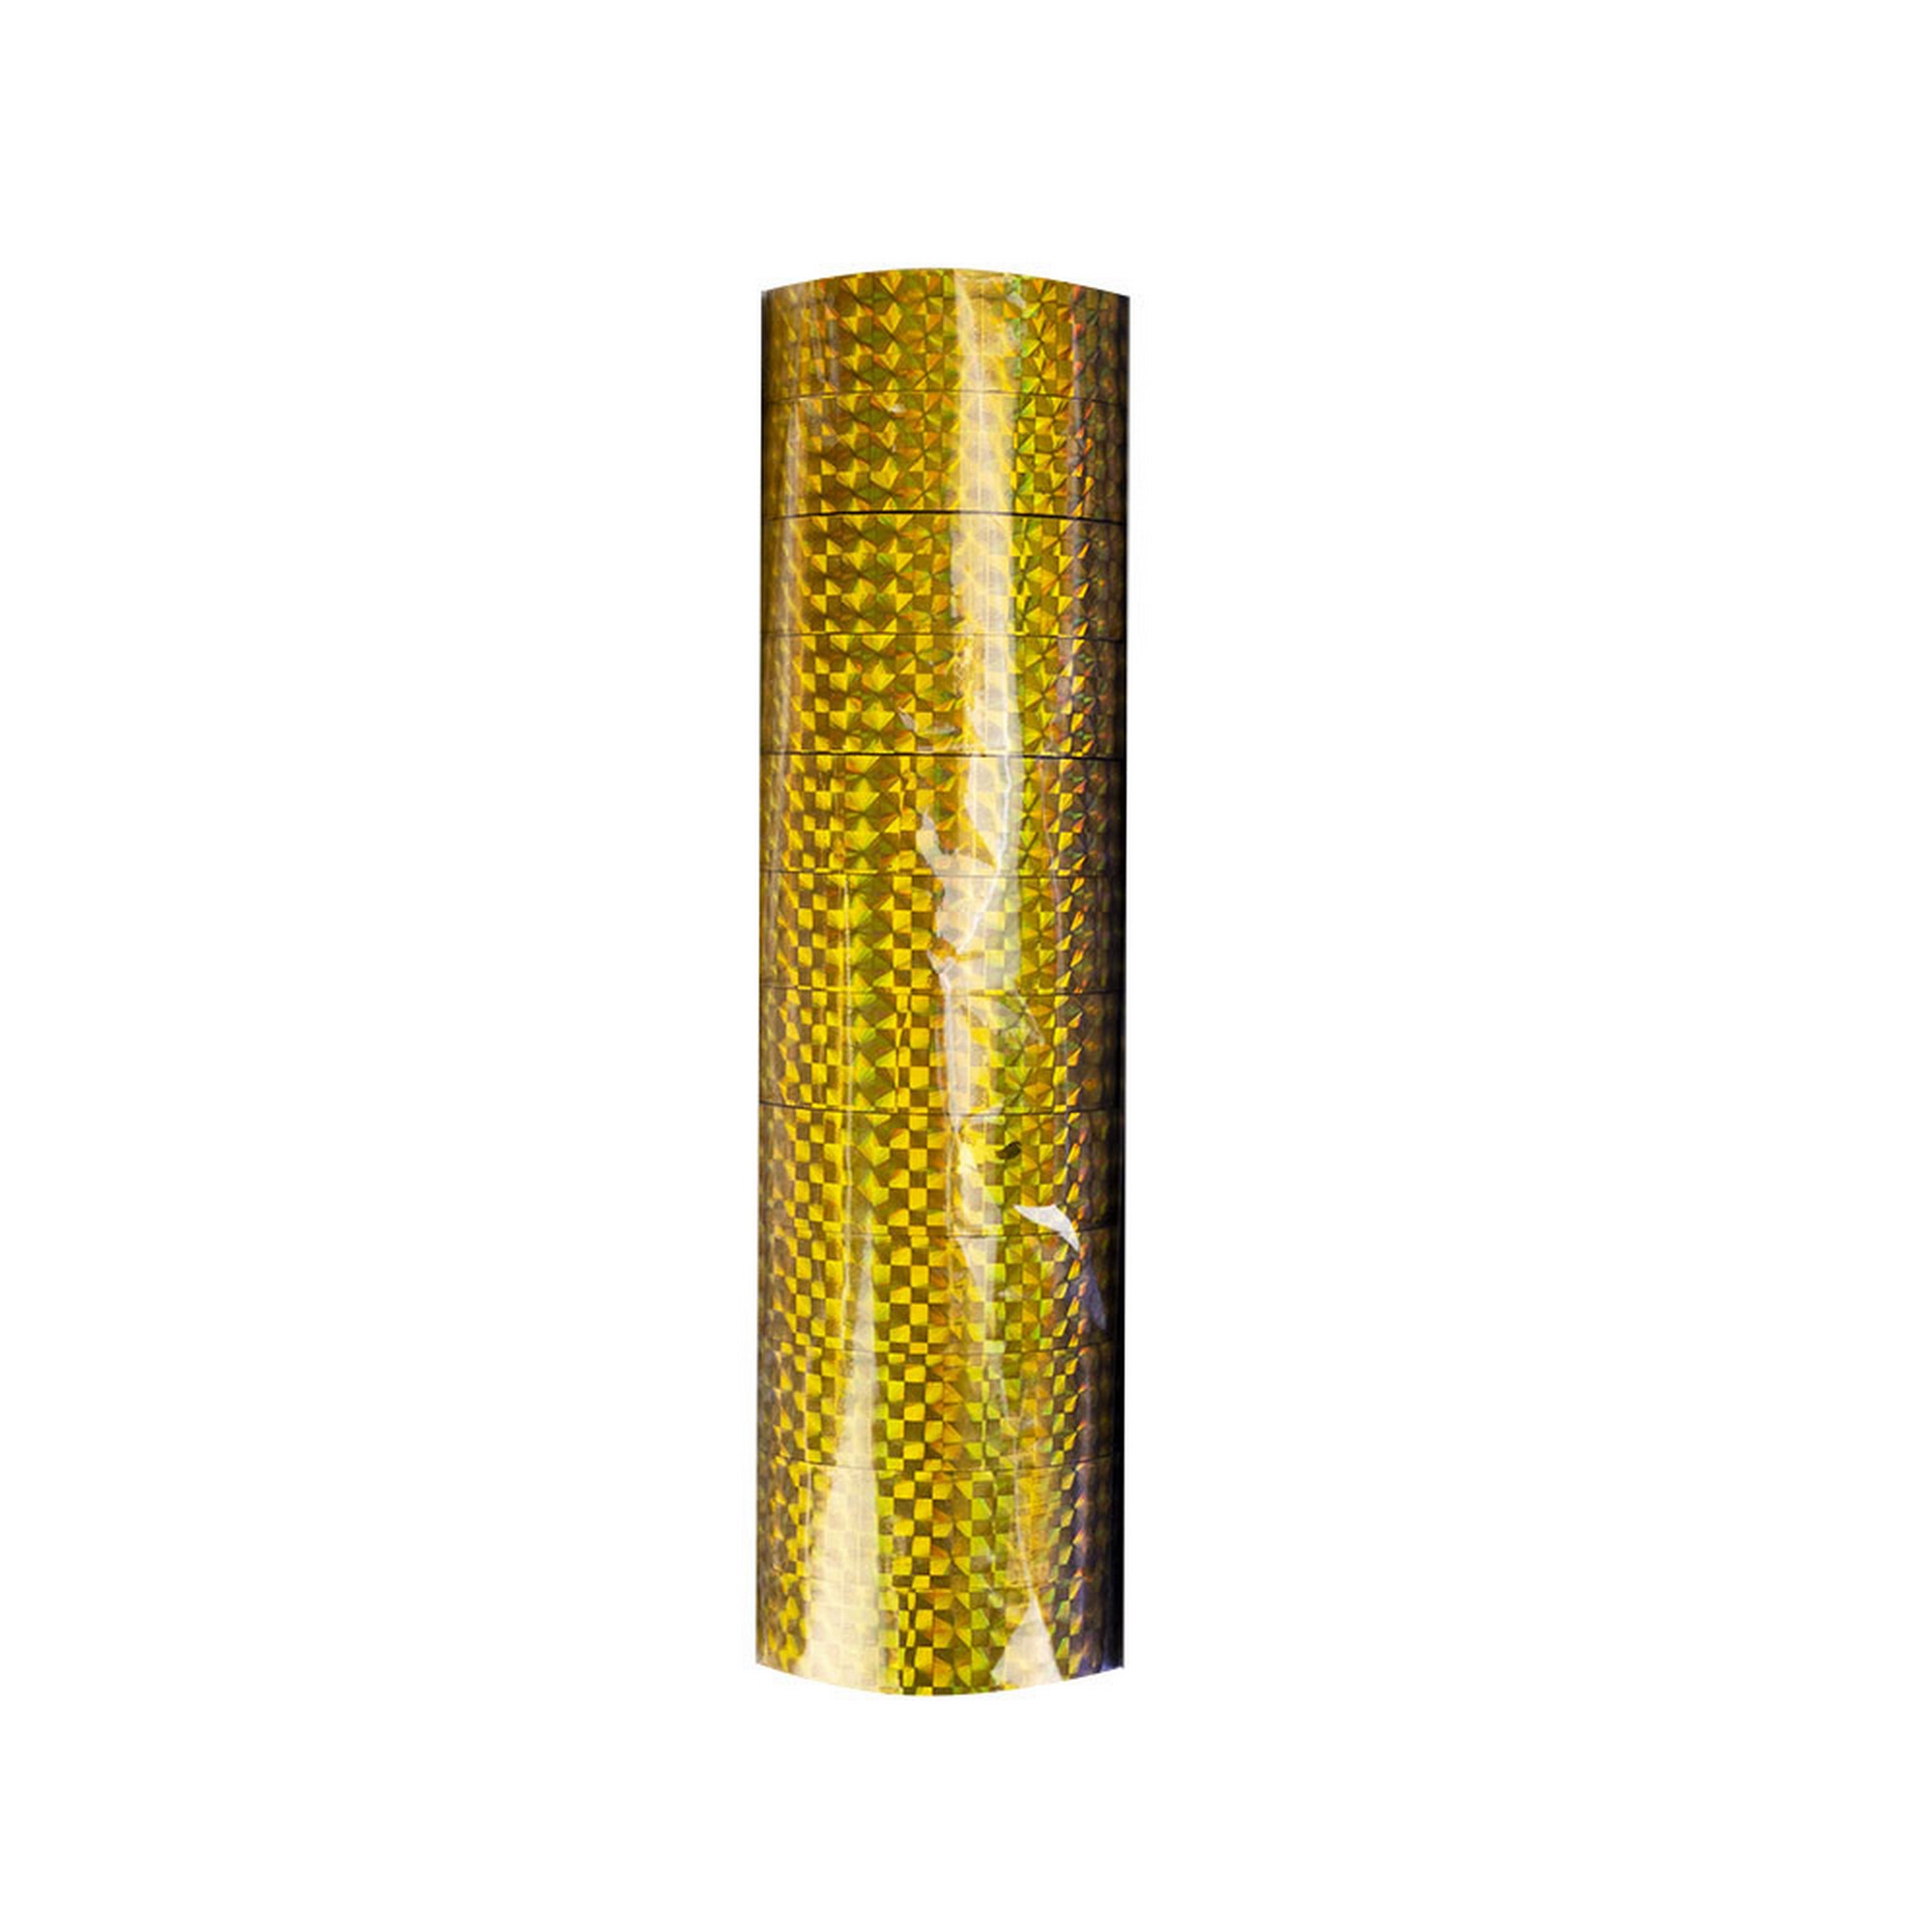 Обмотка для гимнастического обруча ширина 1,5см, длина 3000см E135A-GOL золотистый 2000_2000